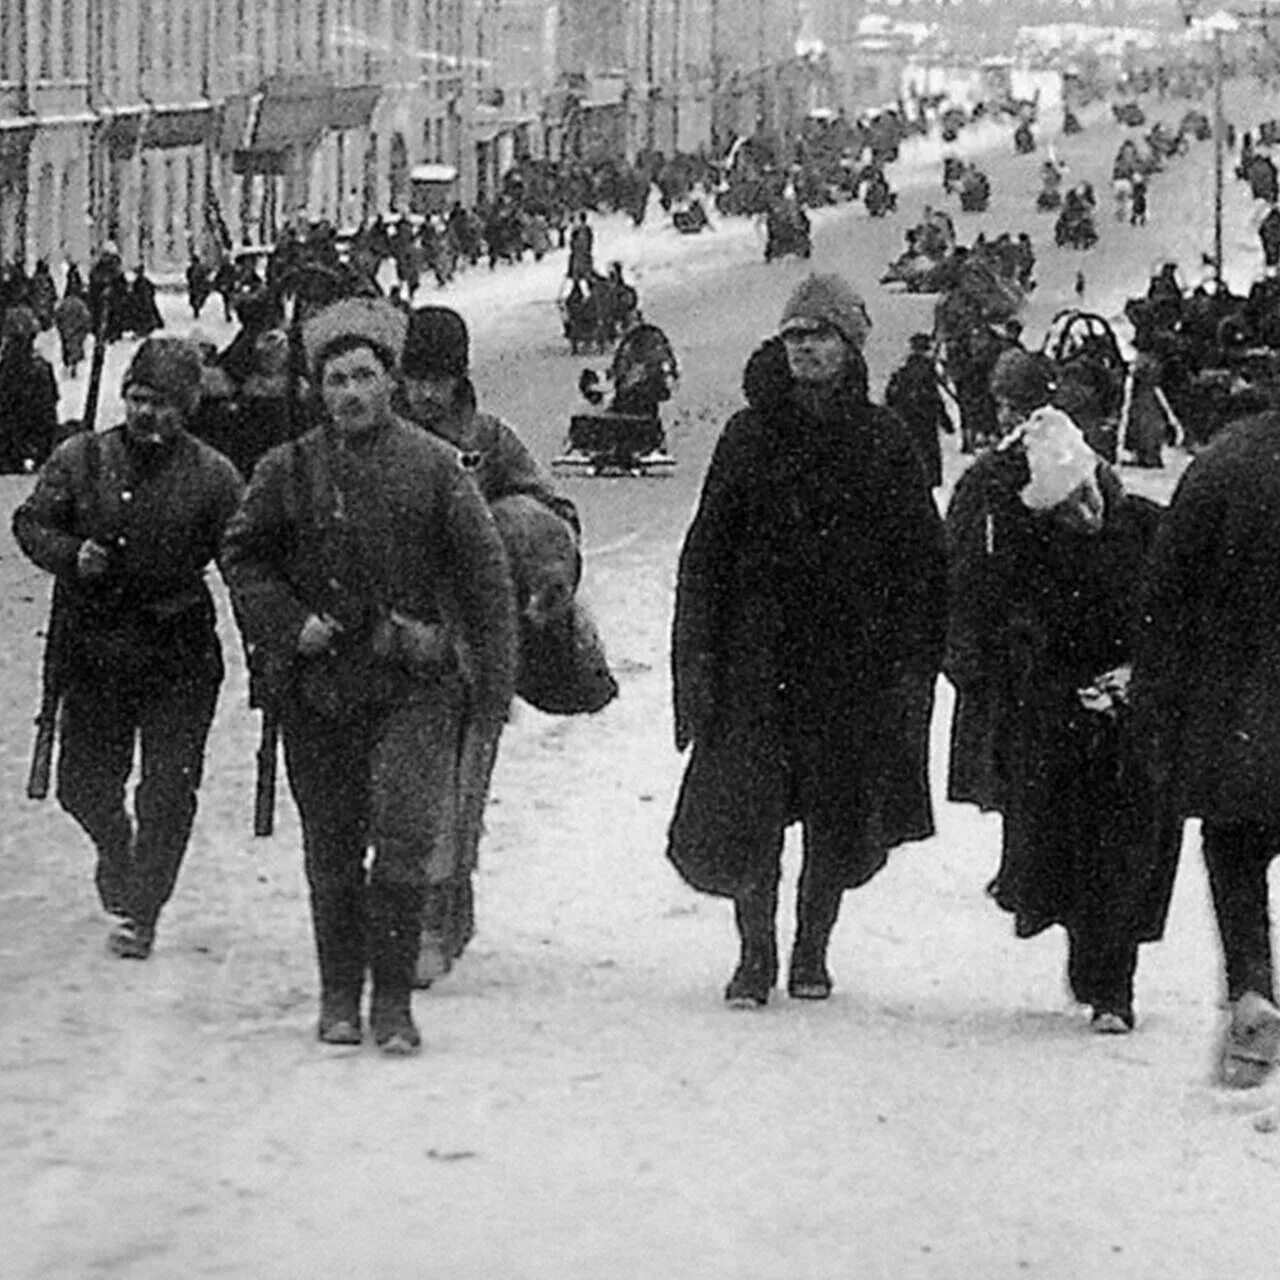 Правительство во главе с колчаком город. Ноябре 1919 Иркутск. Красная армия разбивает белую. Омск во время гражданской войны.